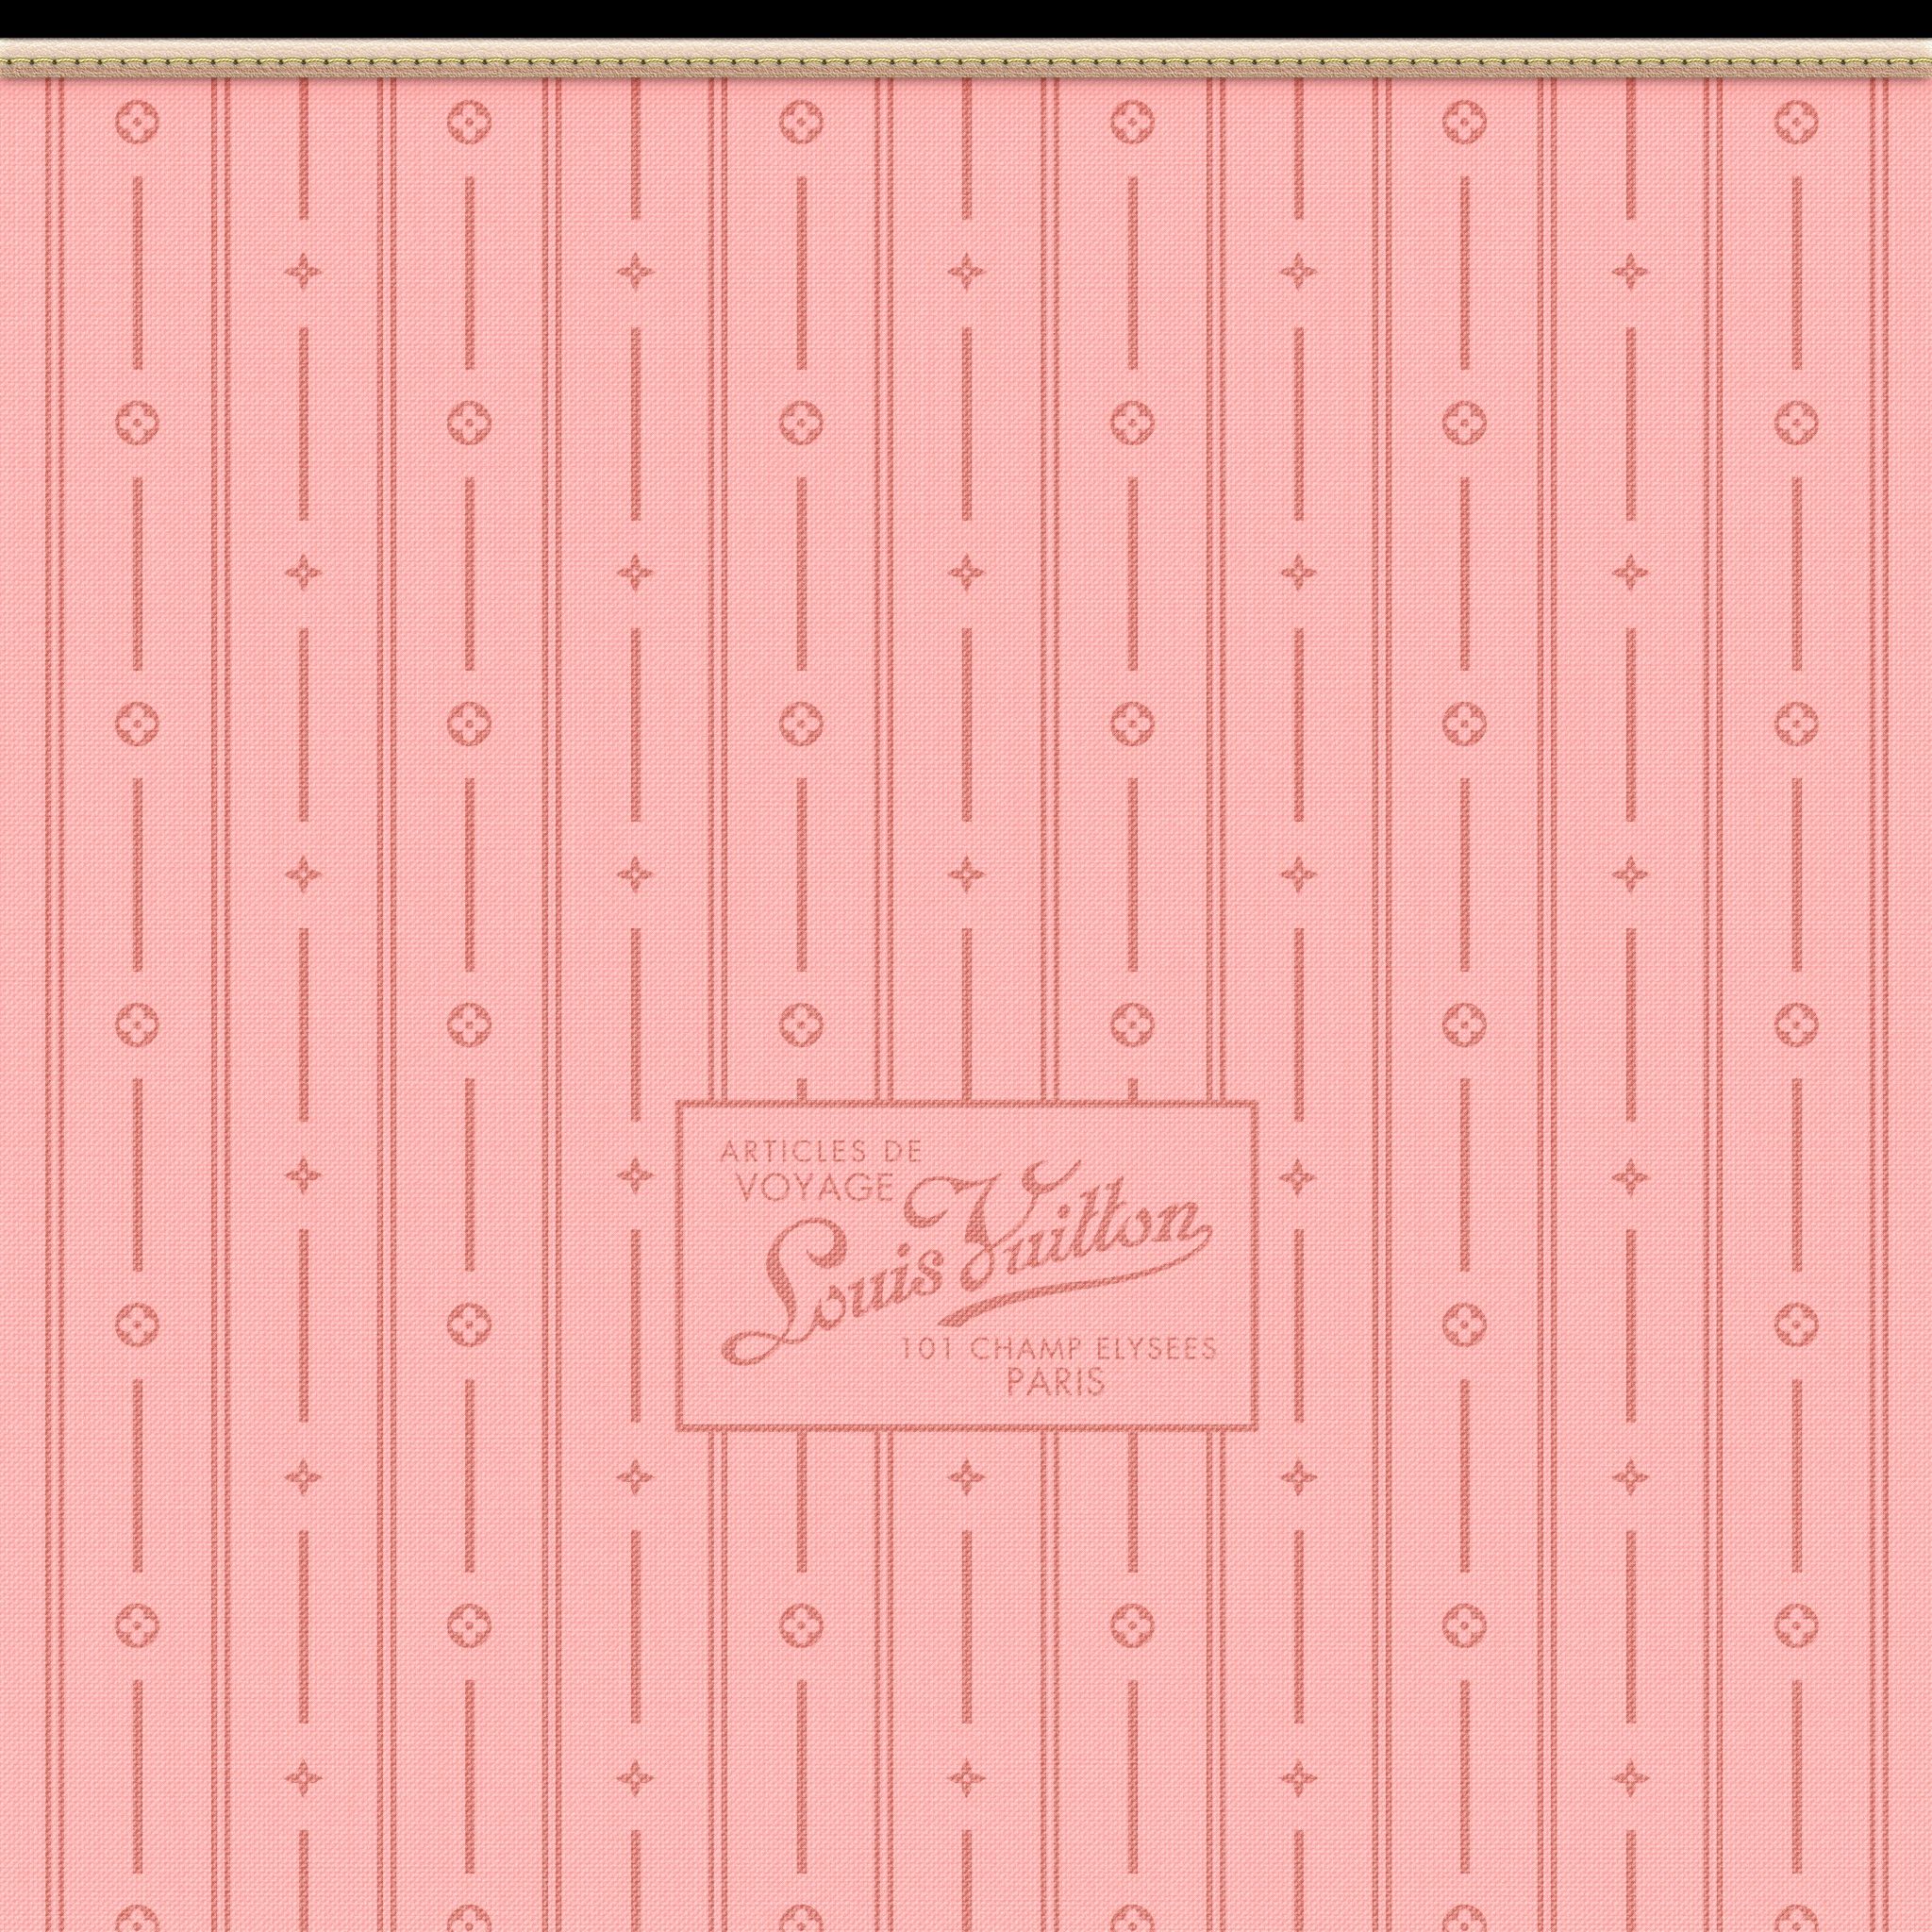 My first design ever — pink Louis Vuitton Wallpaper 🥰 : r/ACQR